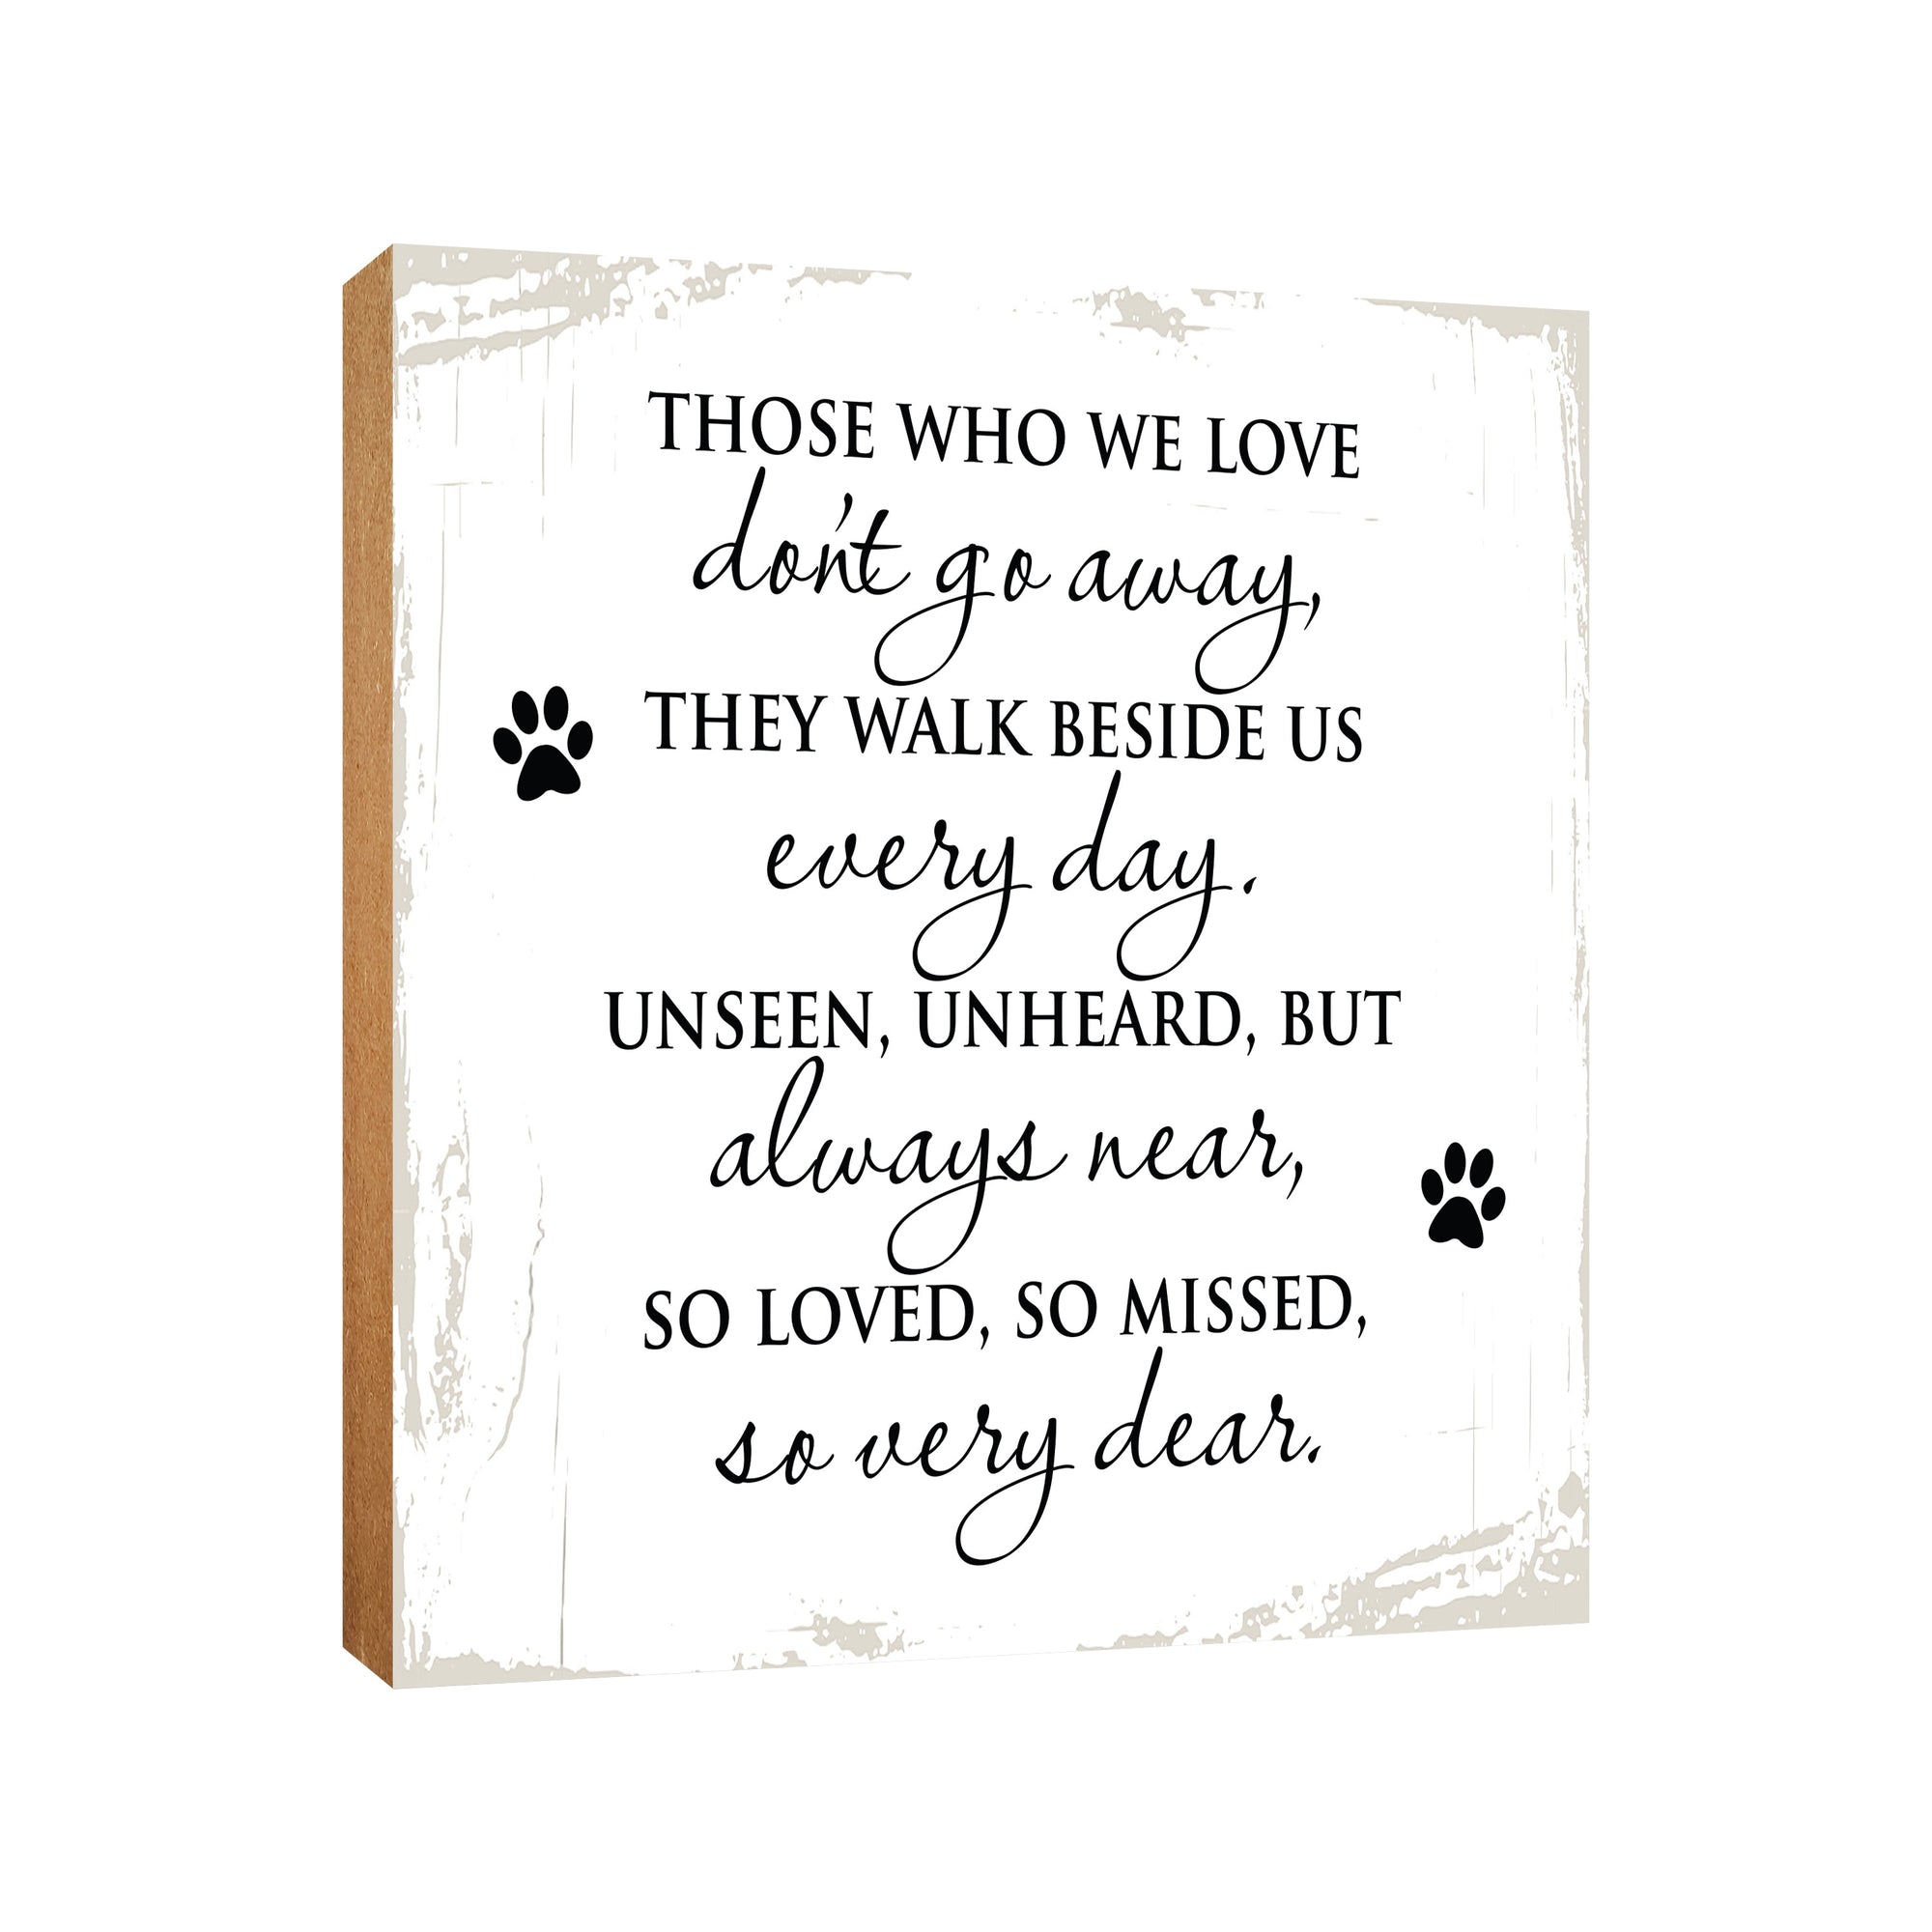 Pet Memorial shelf decor Plaque Décor - Those Who We Love Don't Go Away